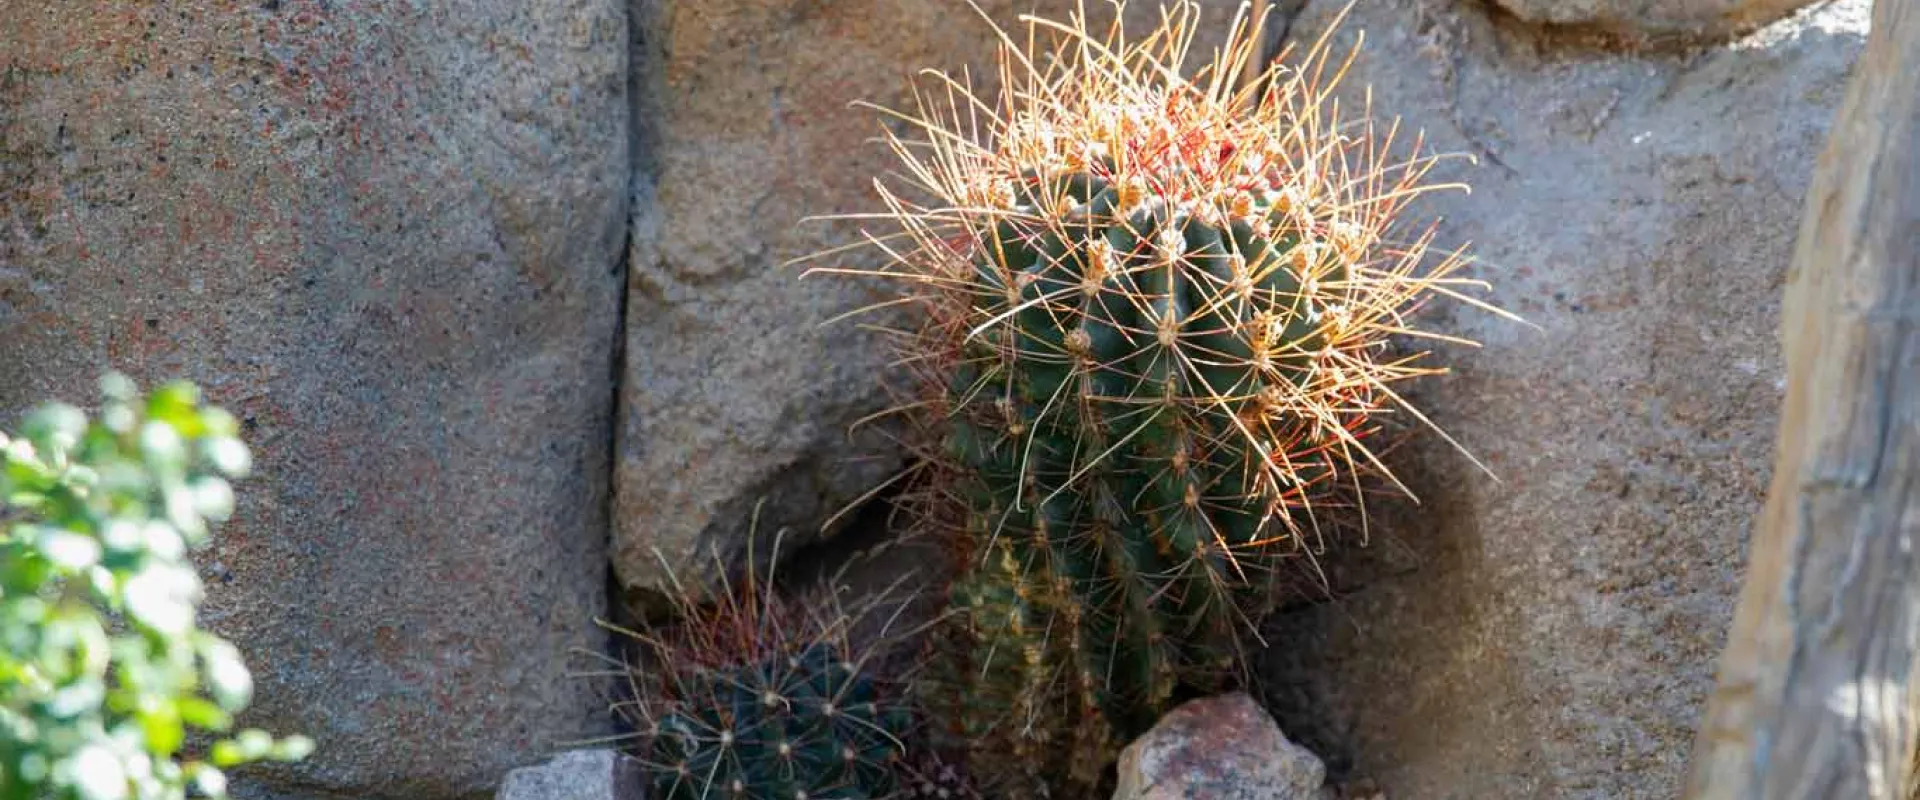 Barrel Cactus  